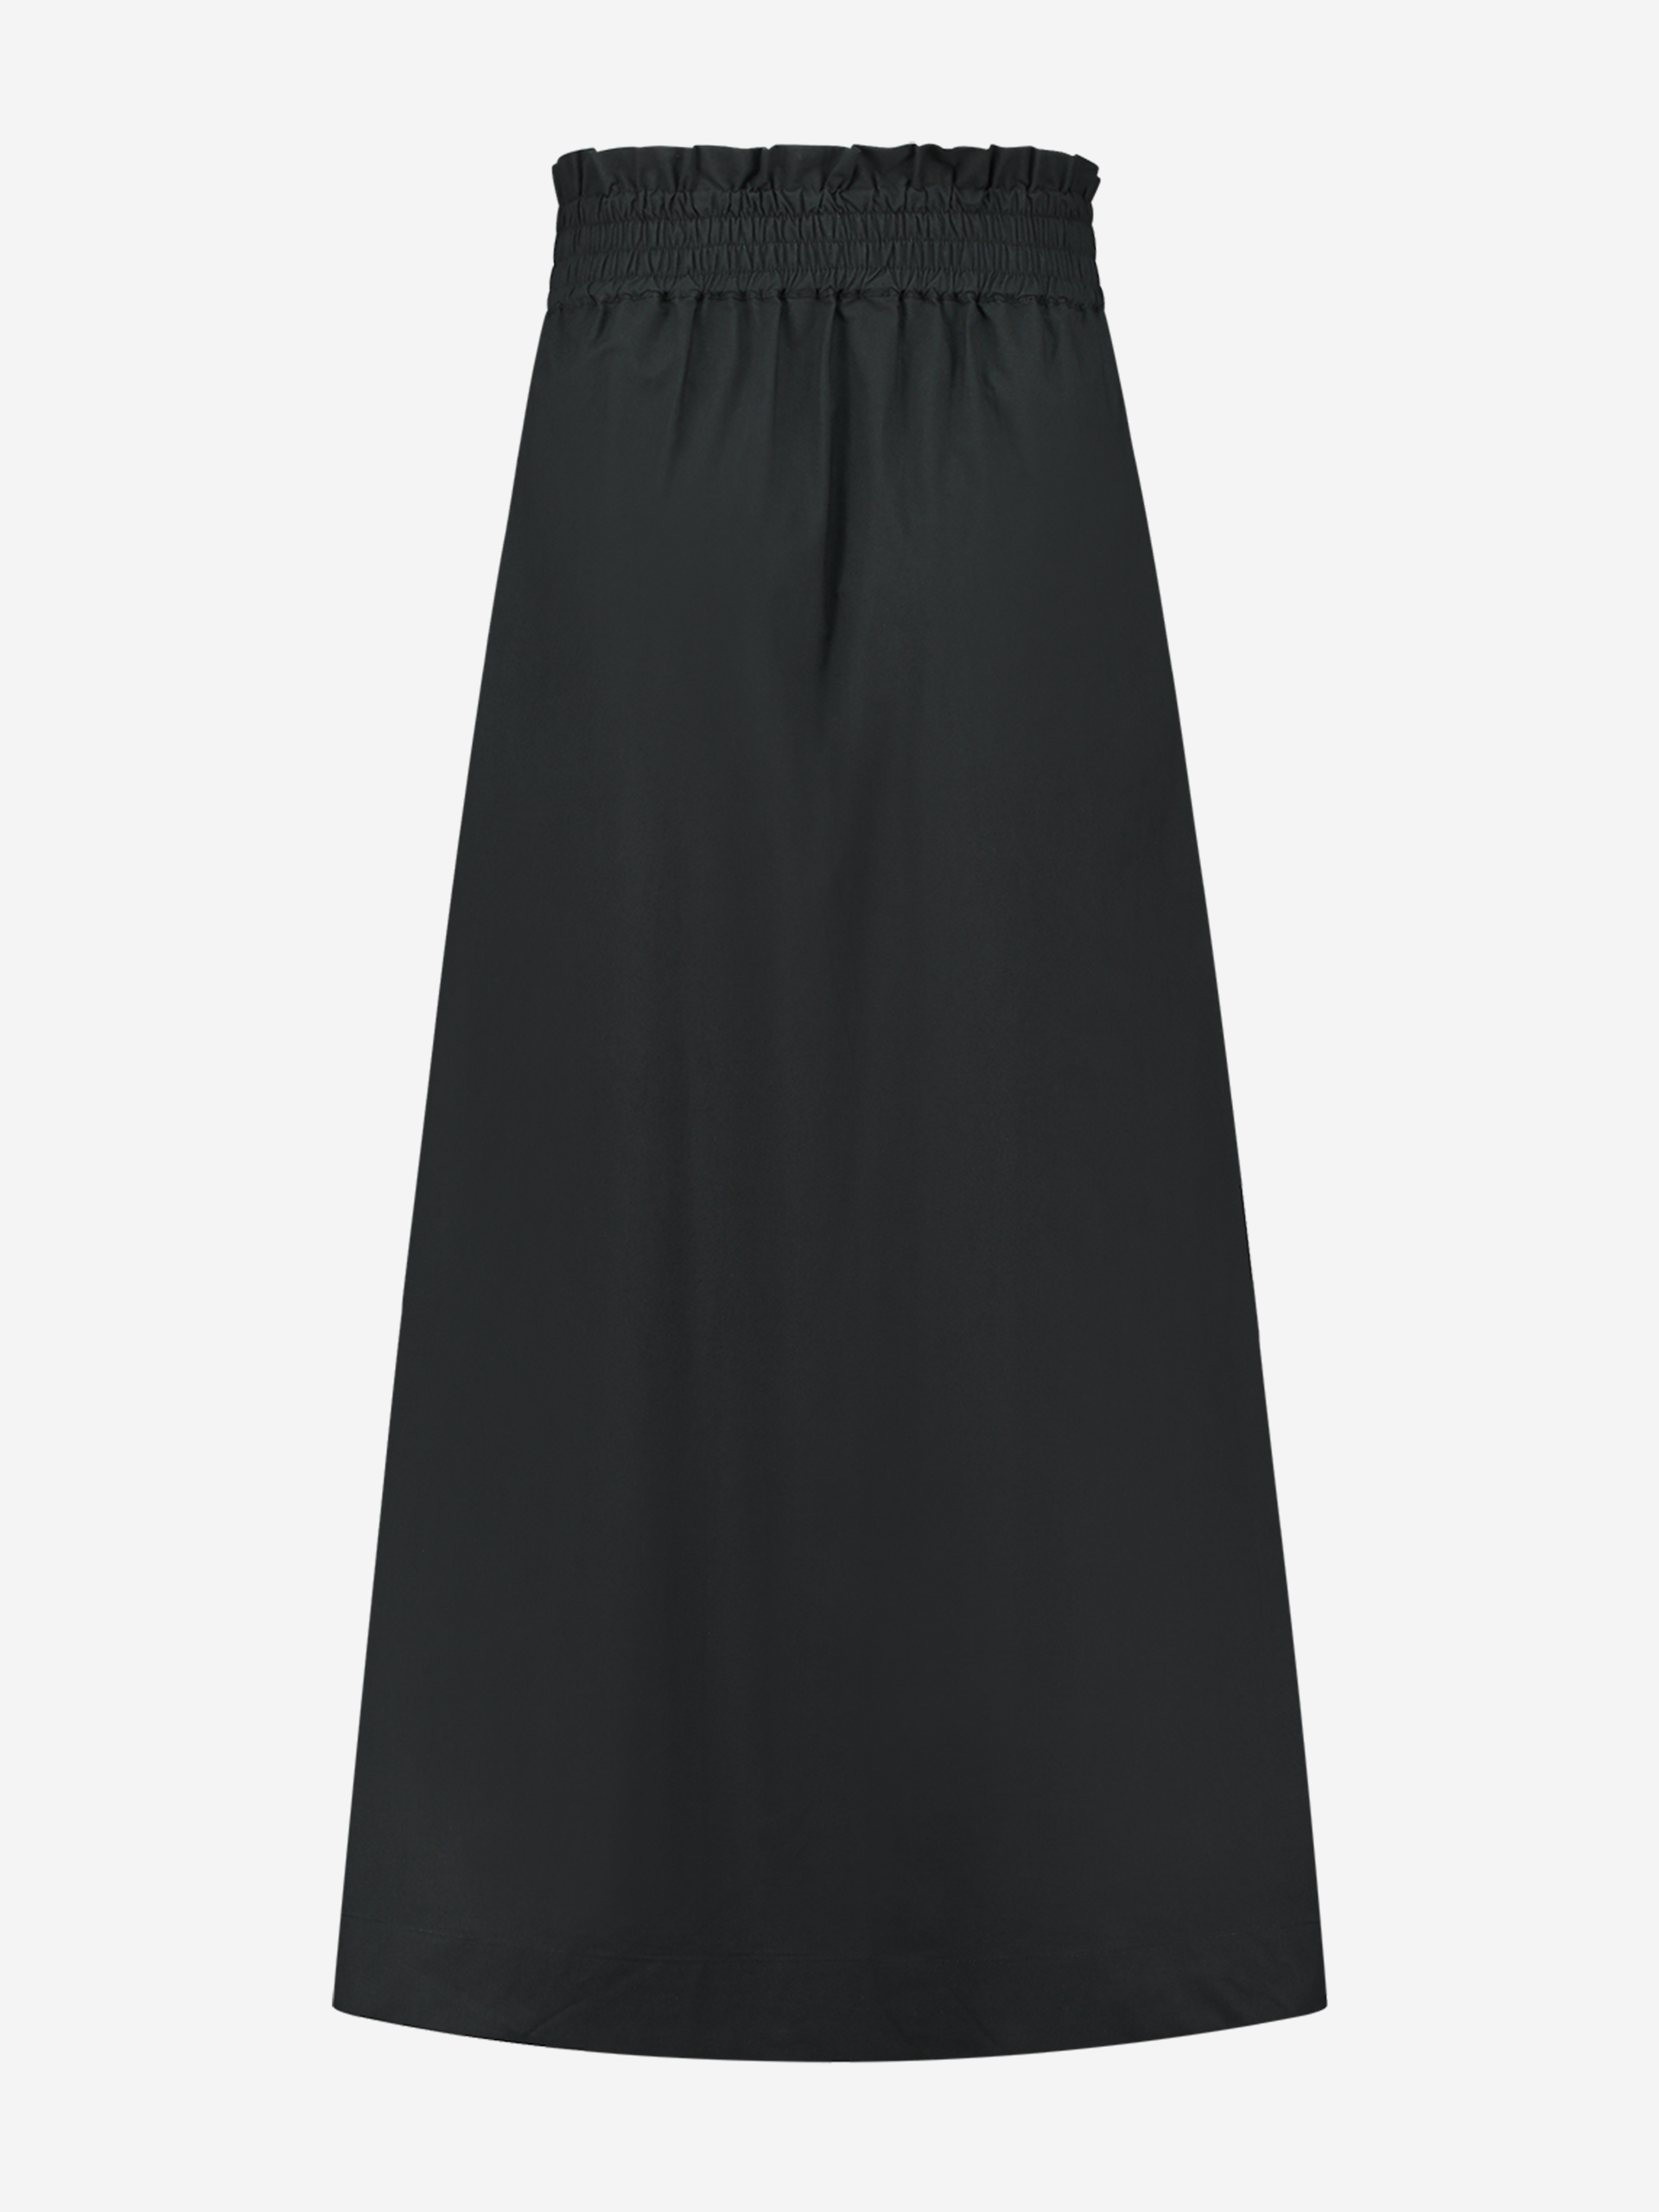  Maxi skirt with elastic waistband